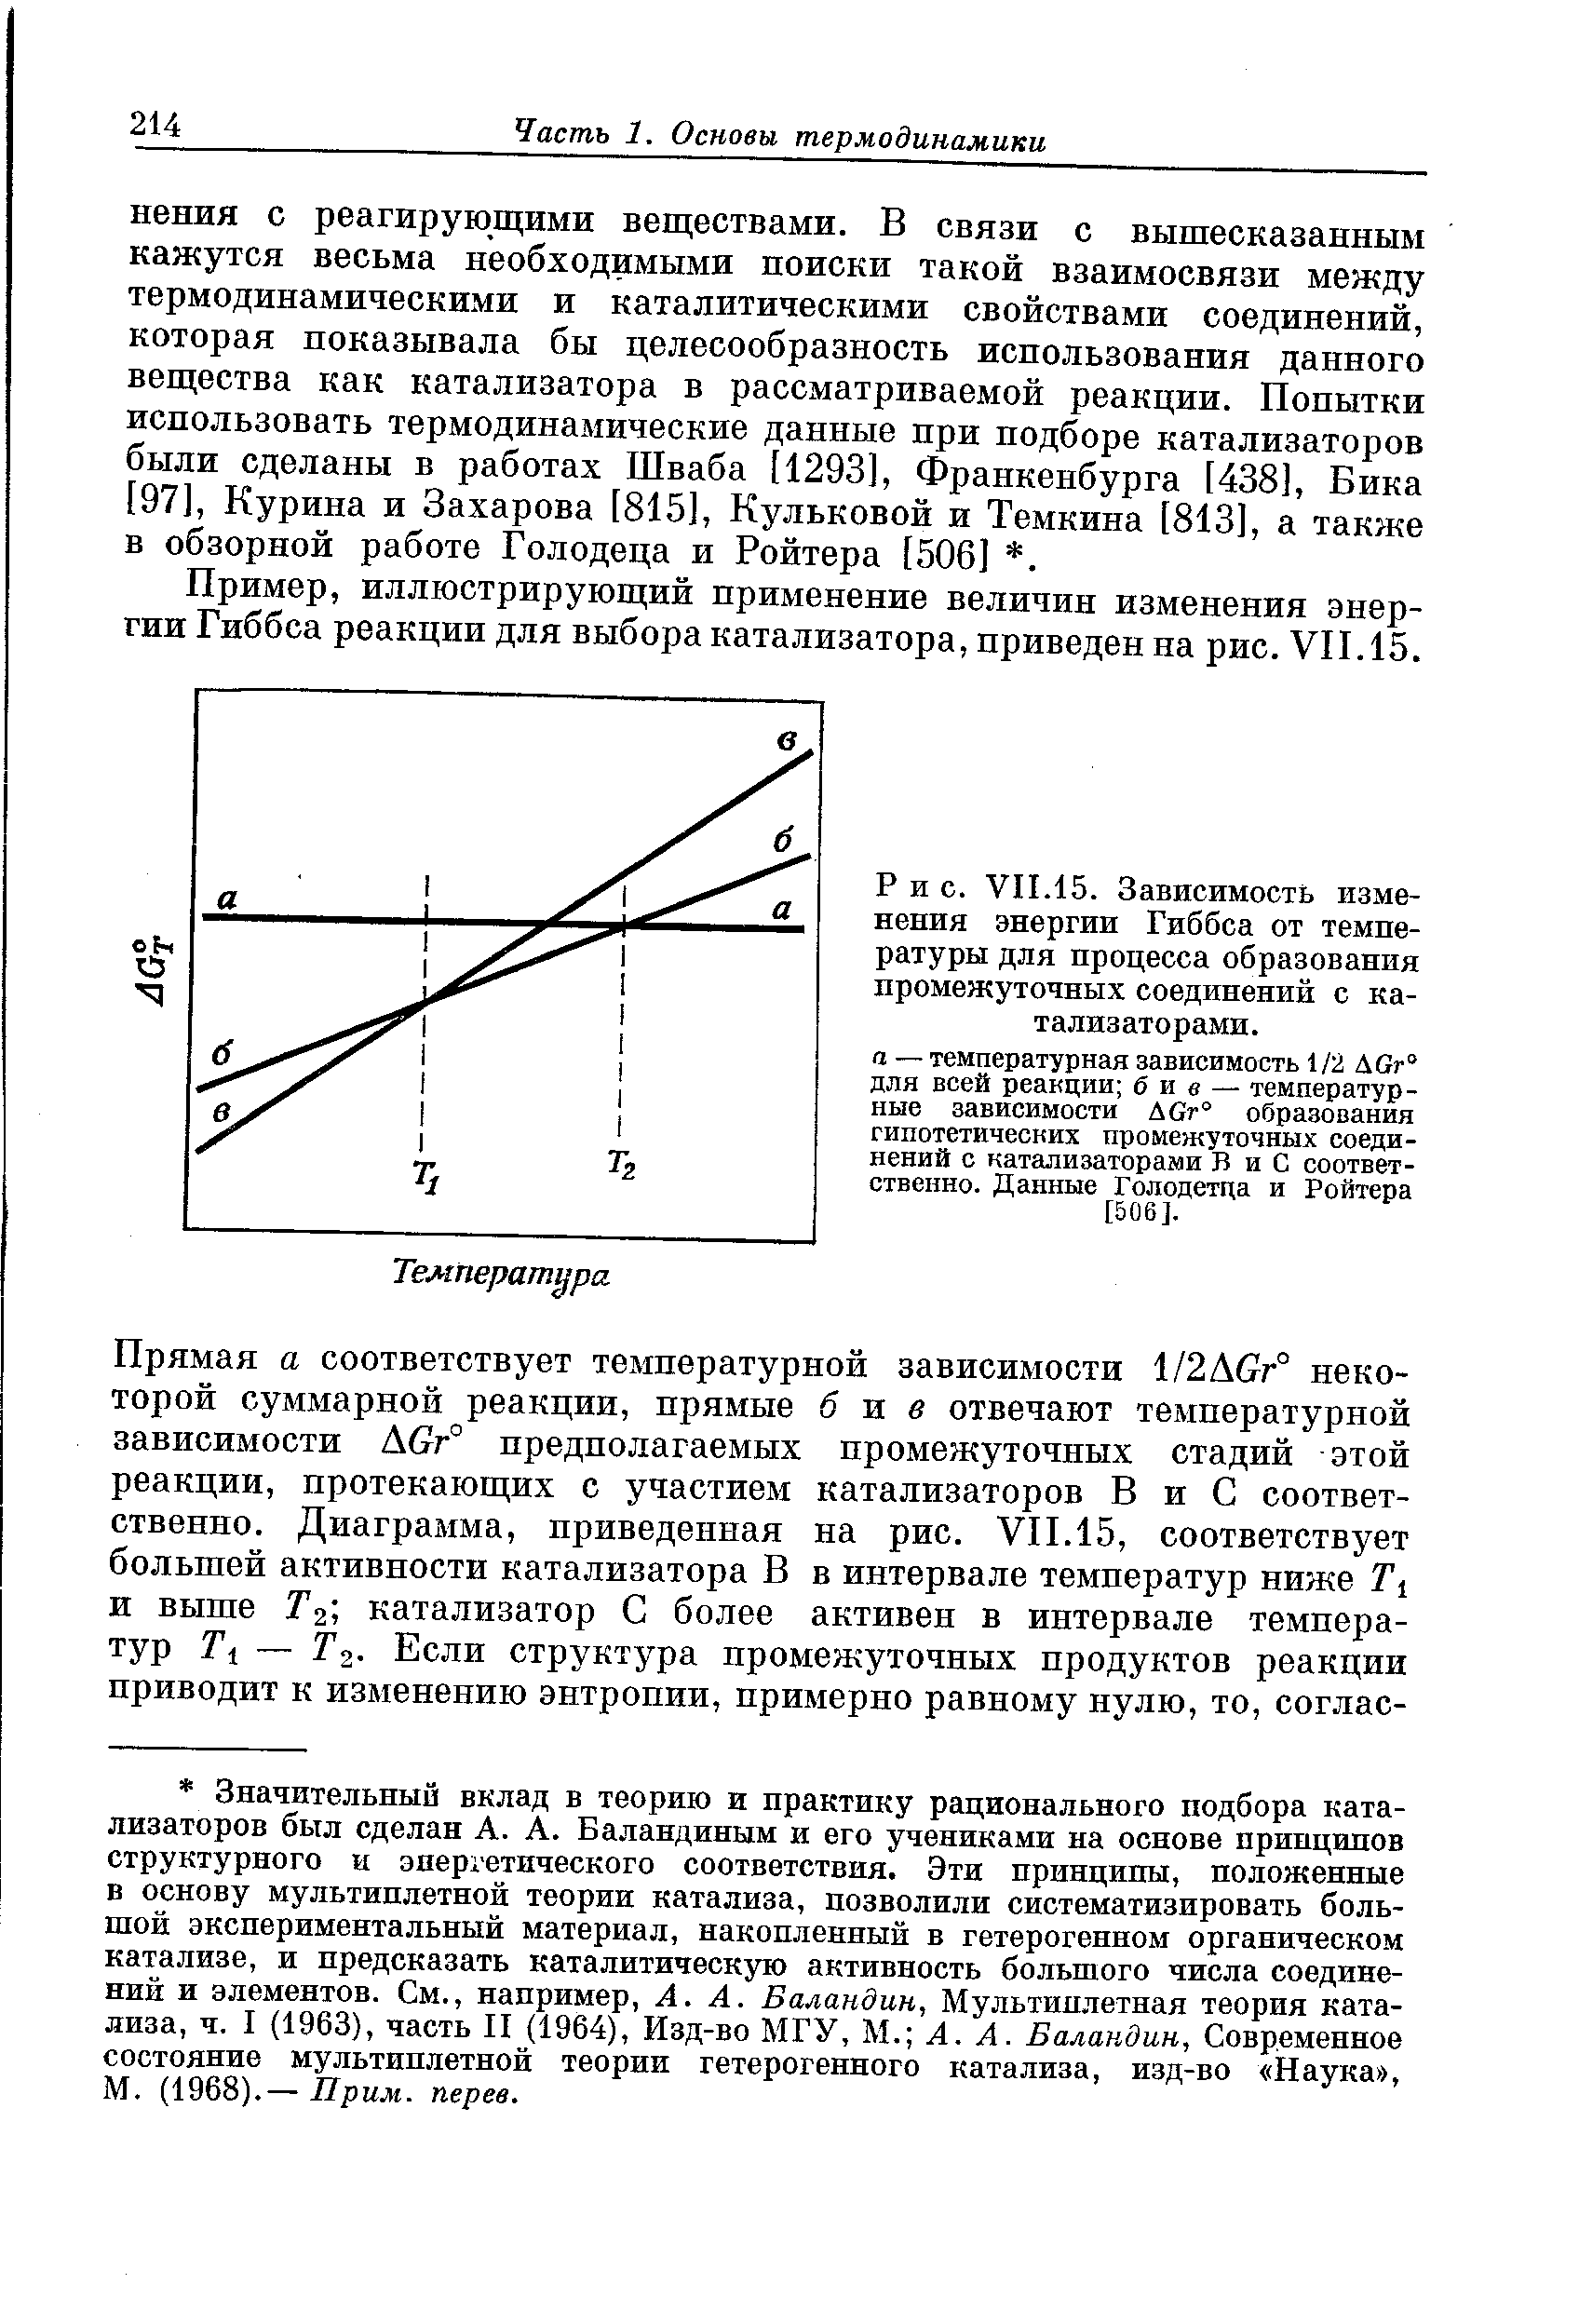 Пример, иллюстрирующий применение величин изменения энергии Гиббса реакции для выбора катализатора, приведен на рис. VII. 15.